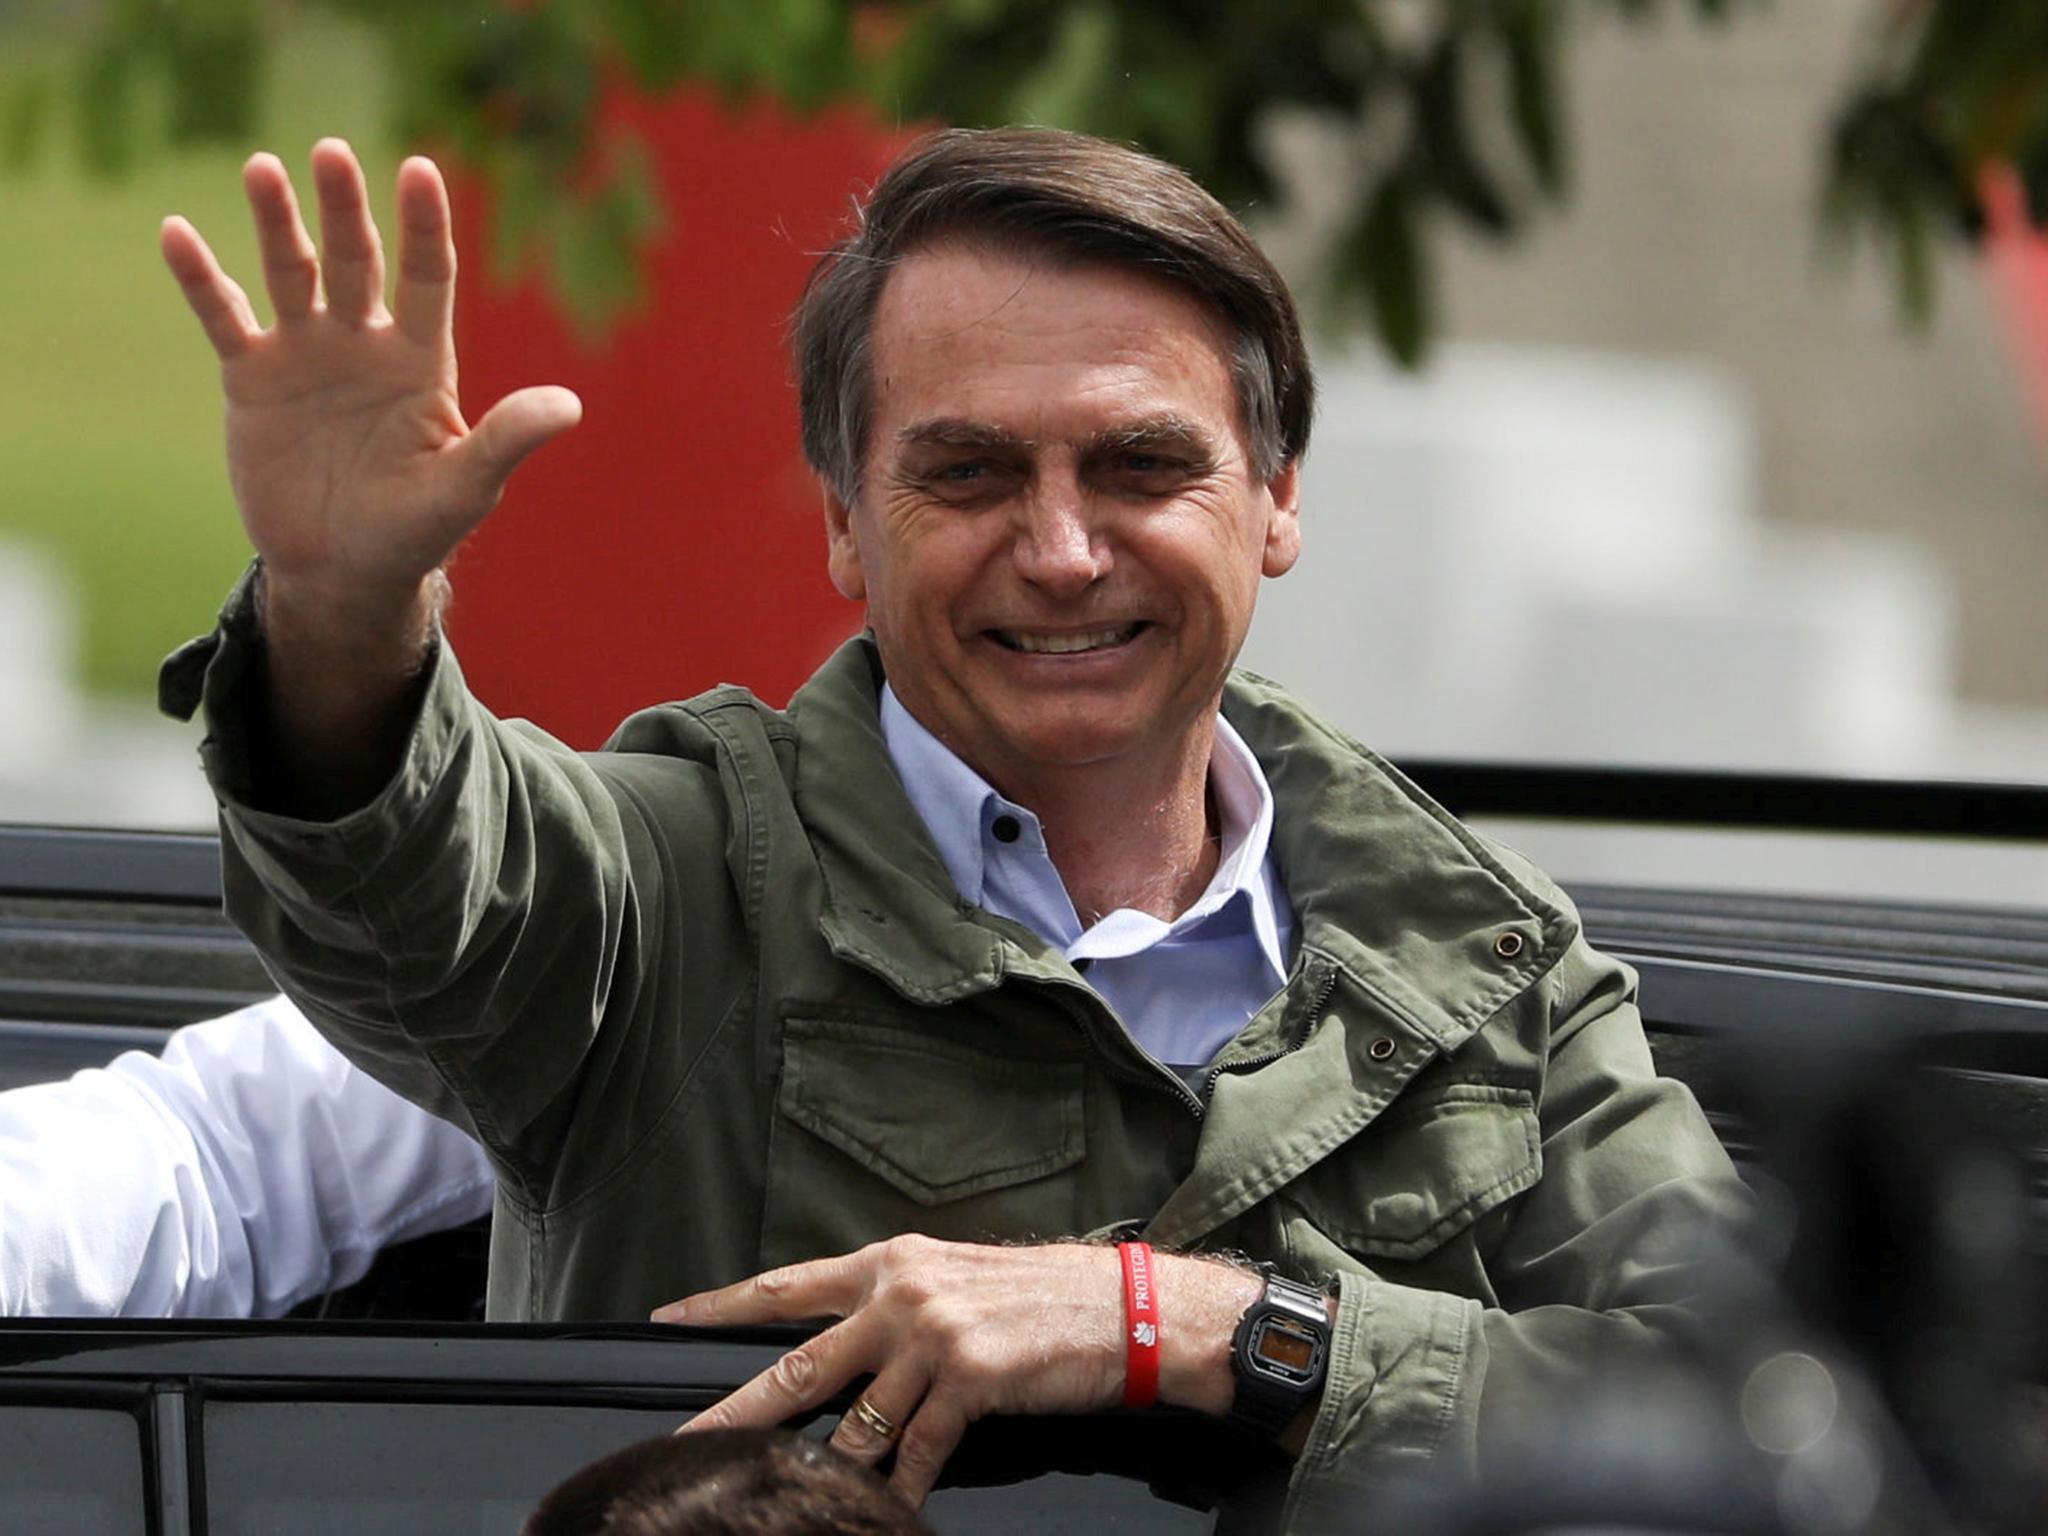 Jair Bolsonaro won presidential election earlier this week